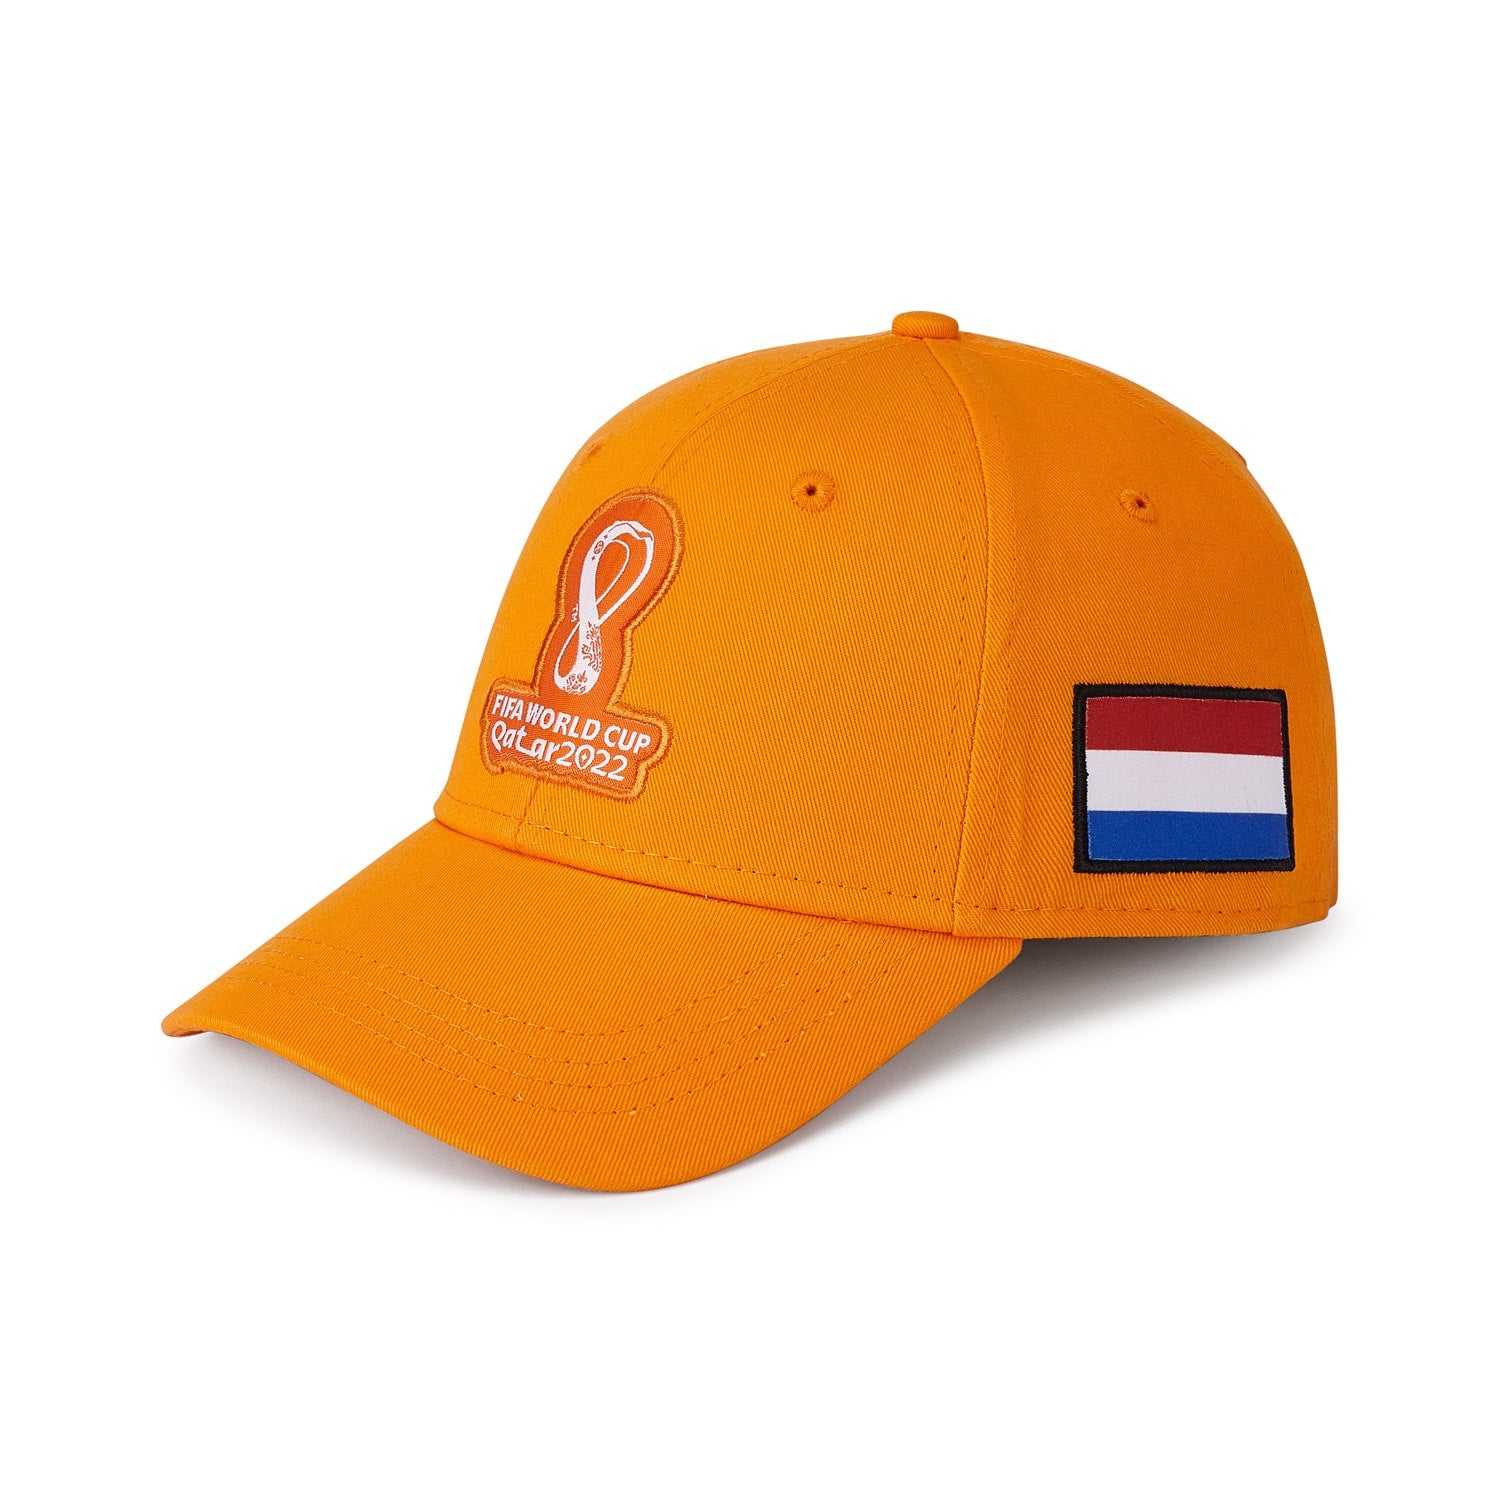 2022 World Cup Netherlands Orange Cap - Men's